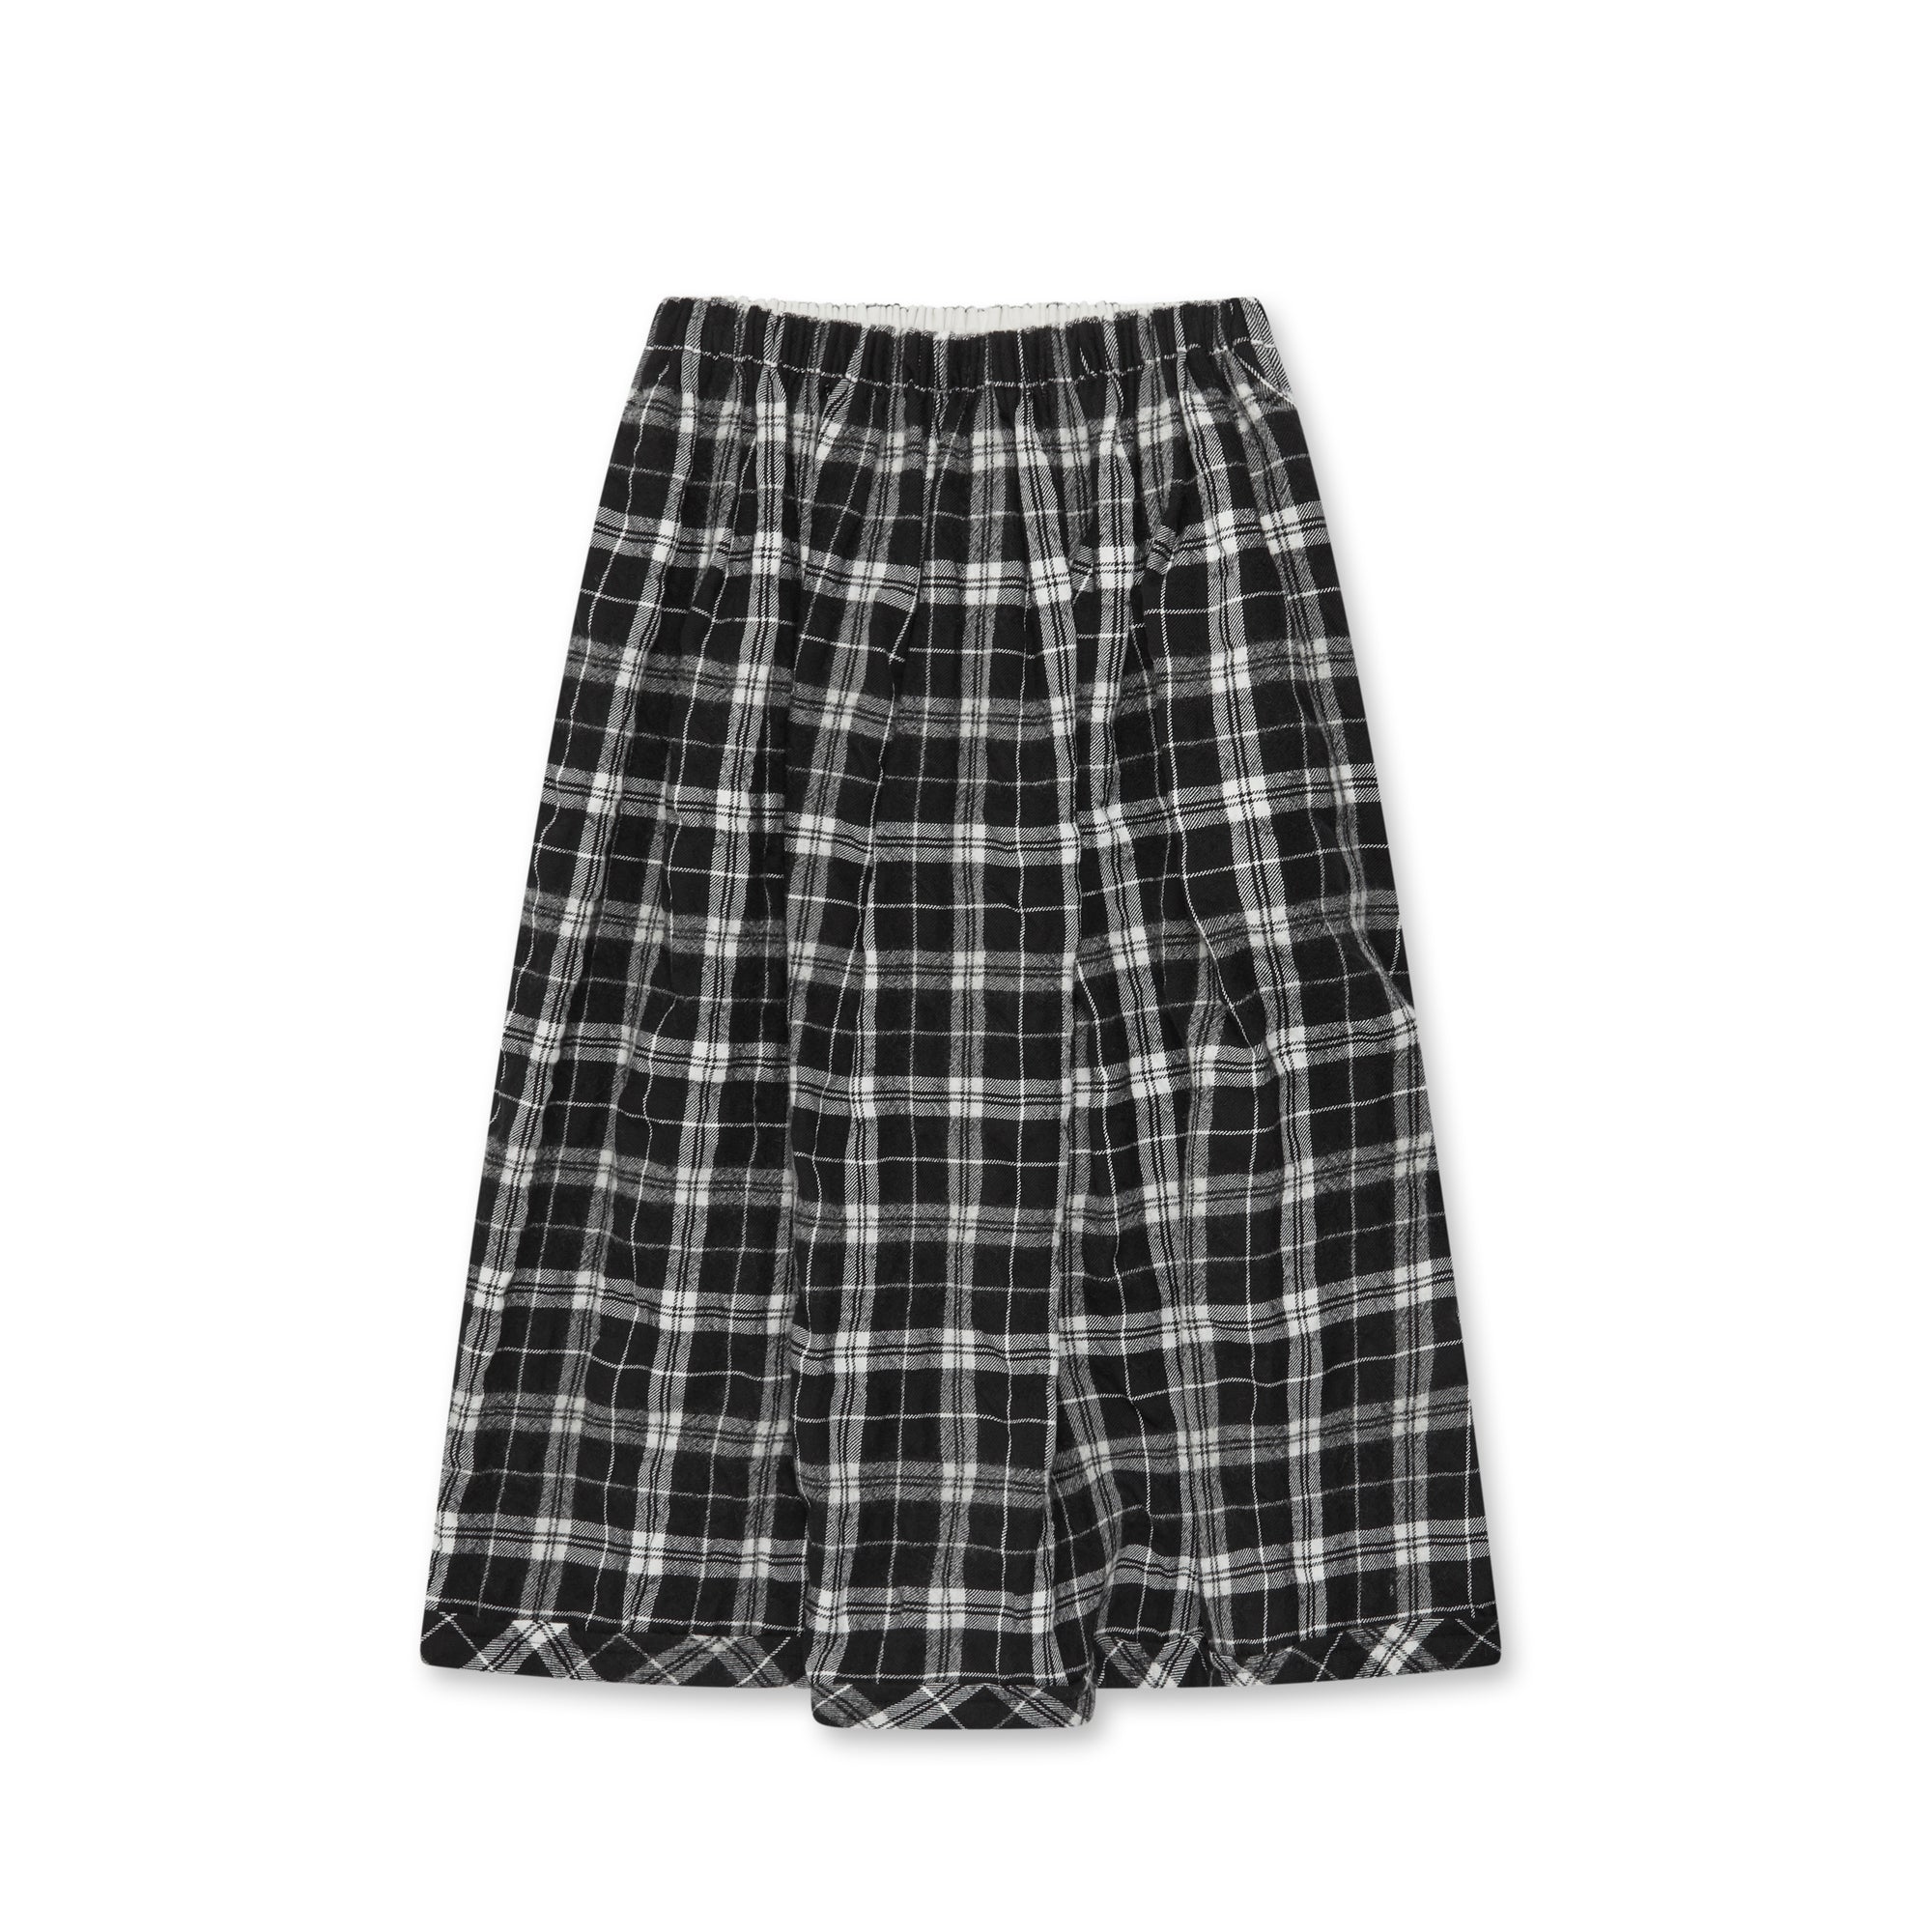 tao - Women's Tartan Skirt - (Black/White) view 5